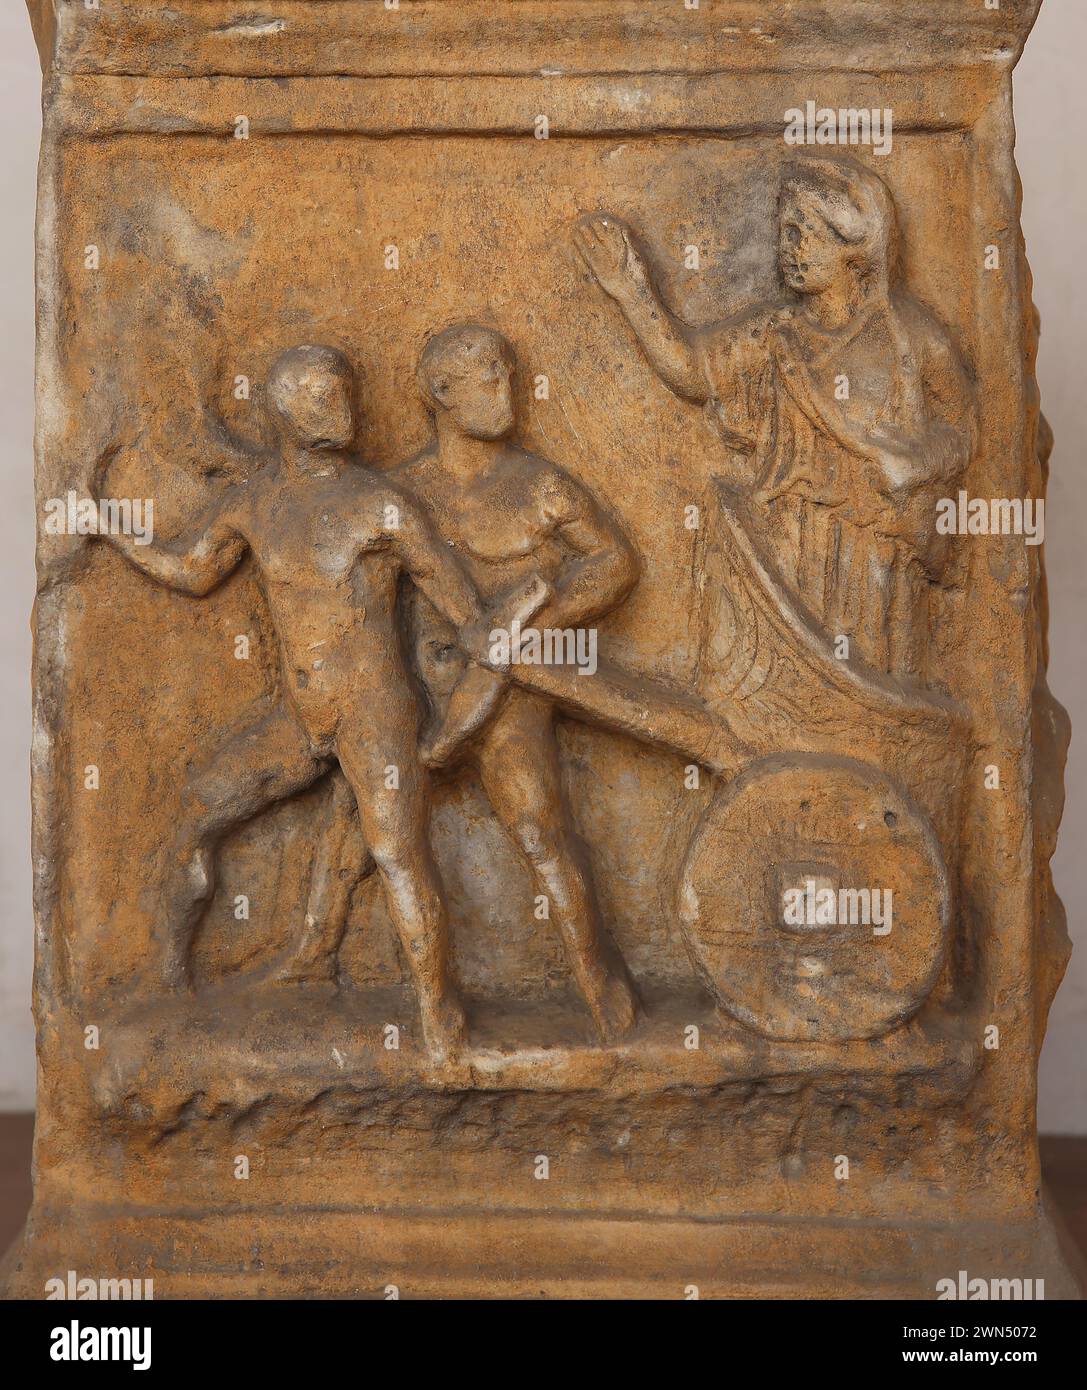 Römischer Altar aus der Kaiserzeit, in Marmor, mit einem Relief, das die Szene darstellt, in der Kleobis und Biton den Wagen ihrer Mutter Cyd ziehen Stockfoto